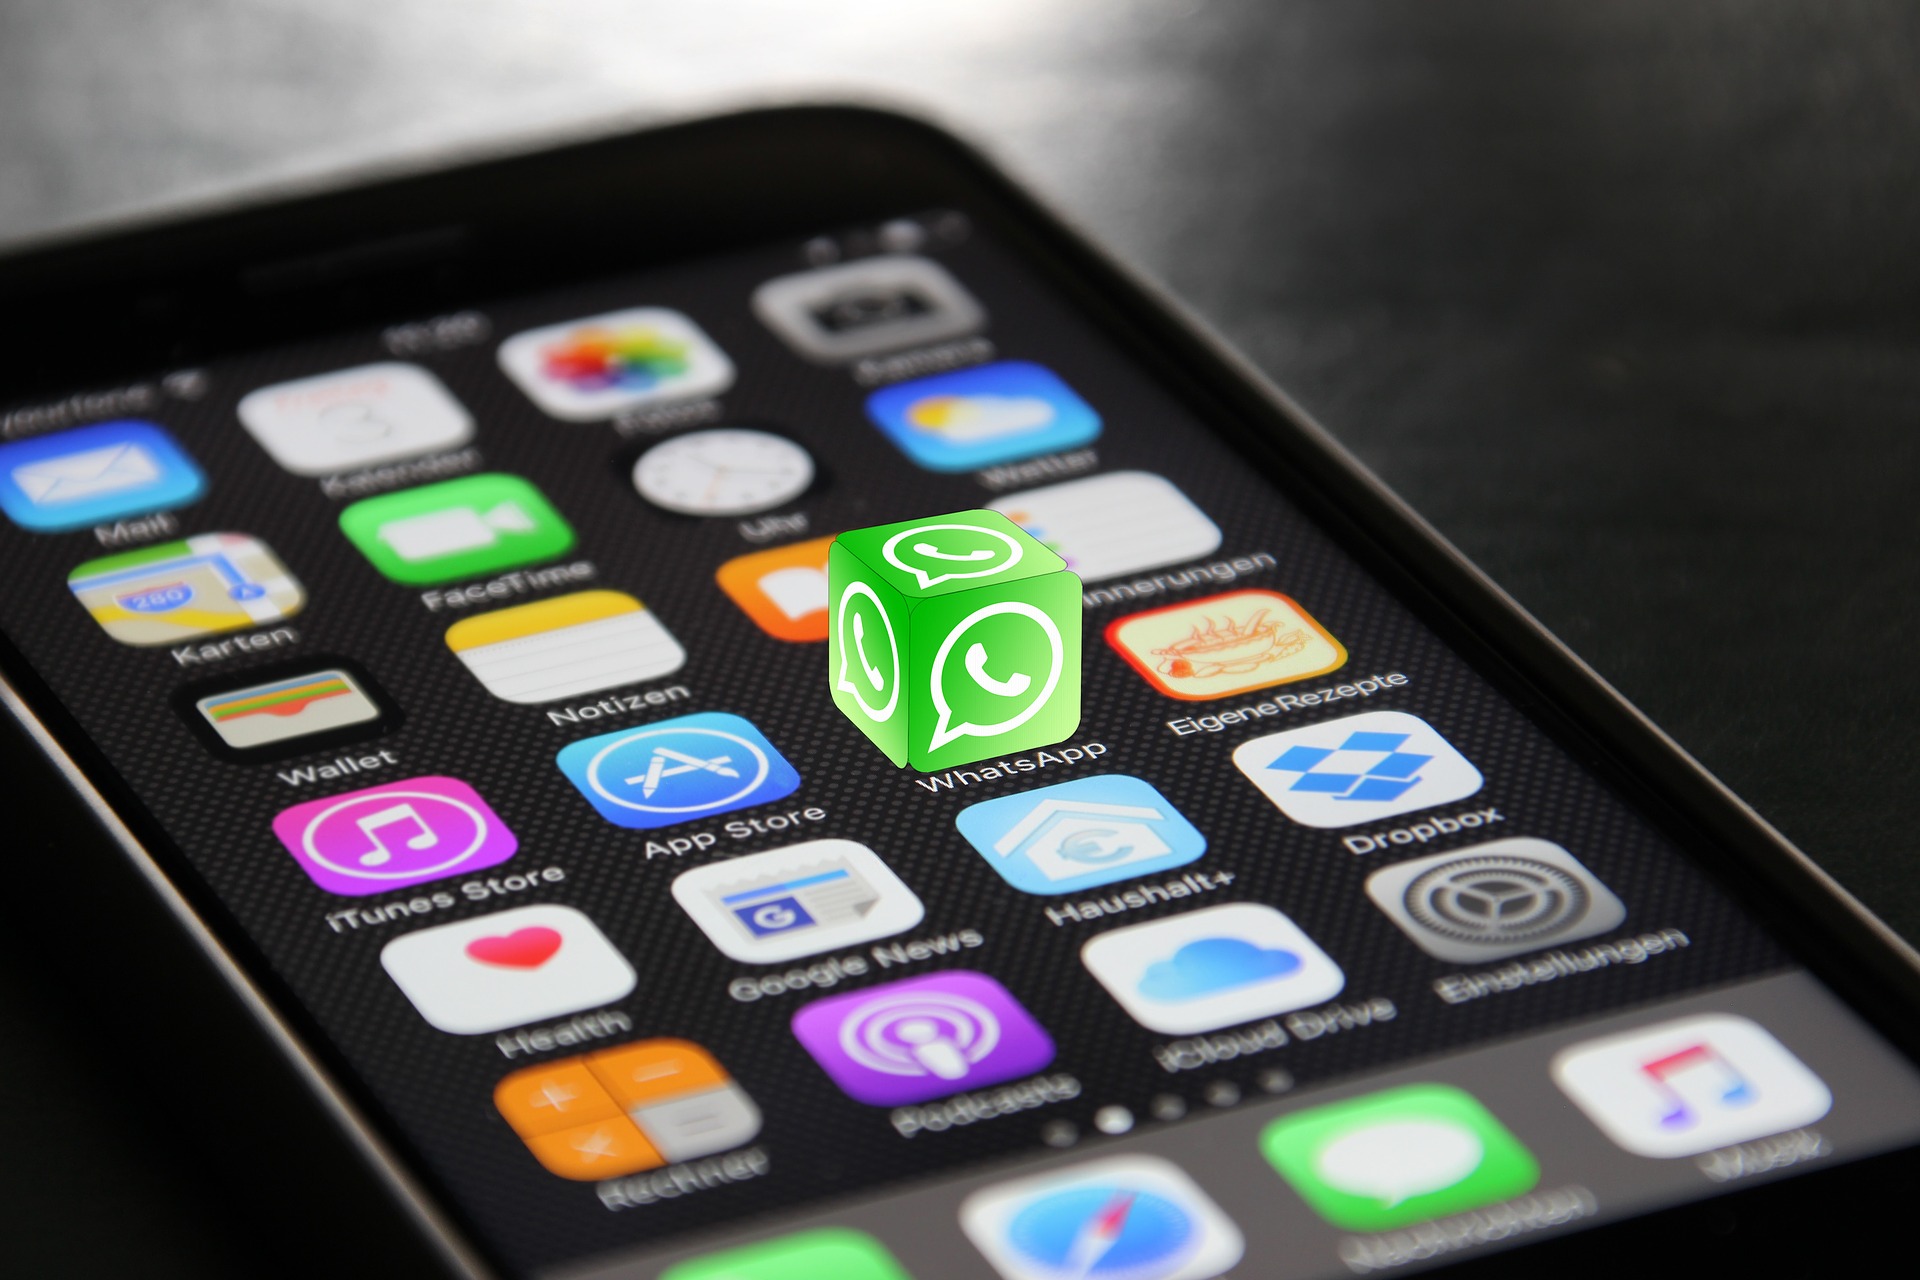 WhatsApp eliminará cuentas si los usuarios utilizan aplicaciones de terceros. (Foto Prensa Libre: Pixabay)